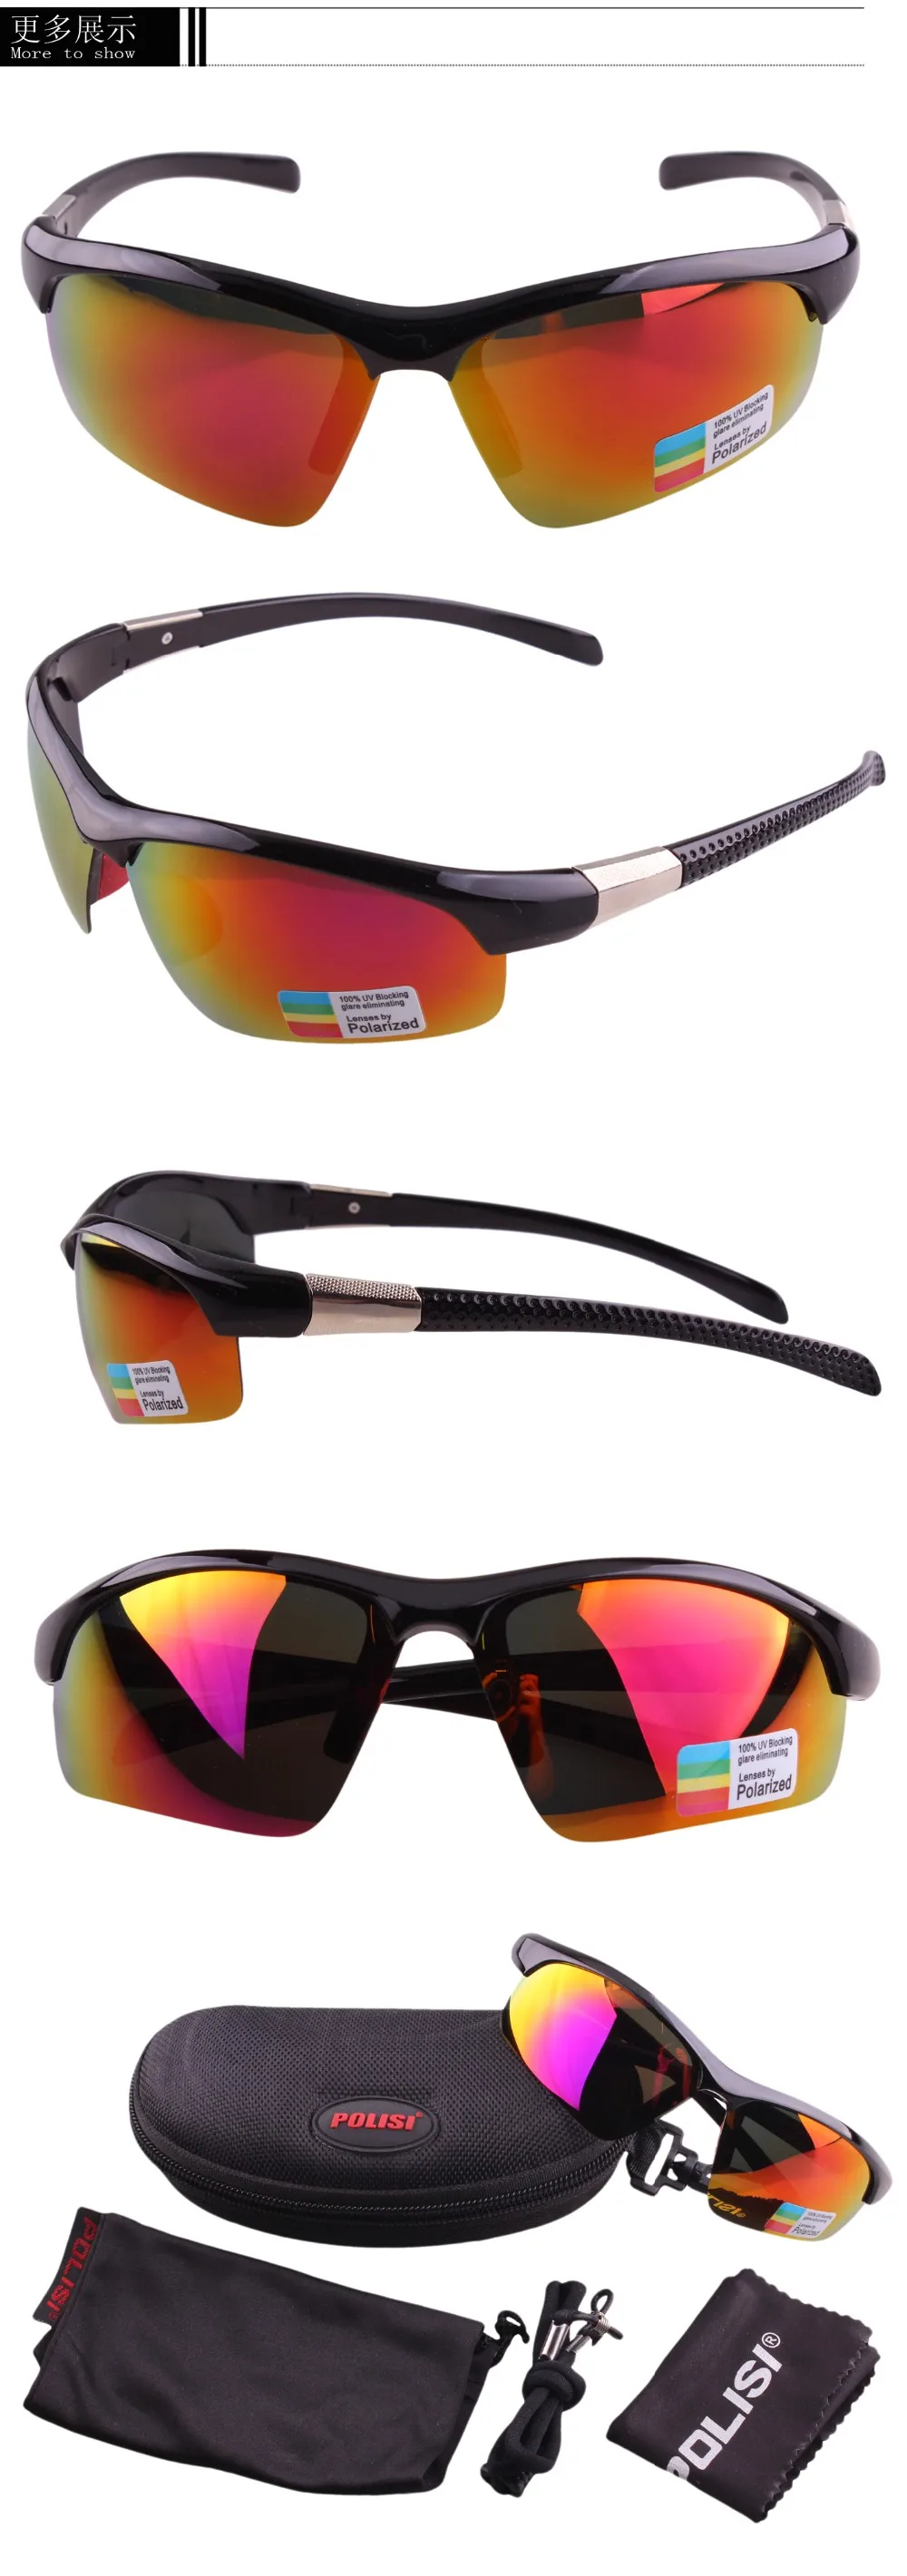 Солнцезащитные очки с поляризованными линзами для мужчин и женщин, спортивные зеркальные солнцезащитные очки, походные очки, спортивные очки для улицы, очки унисекс, велосипедные очки